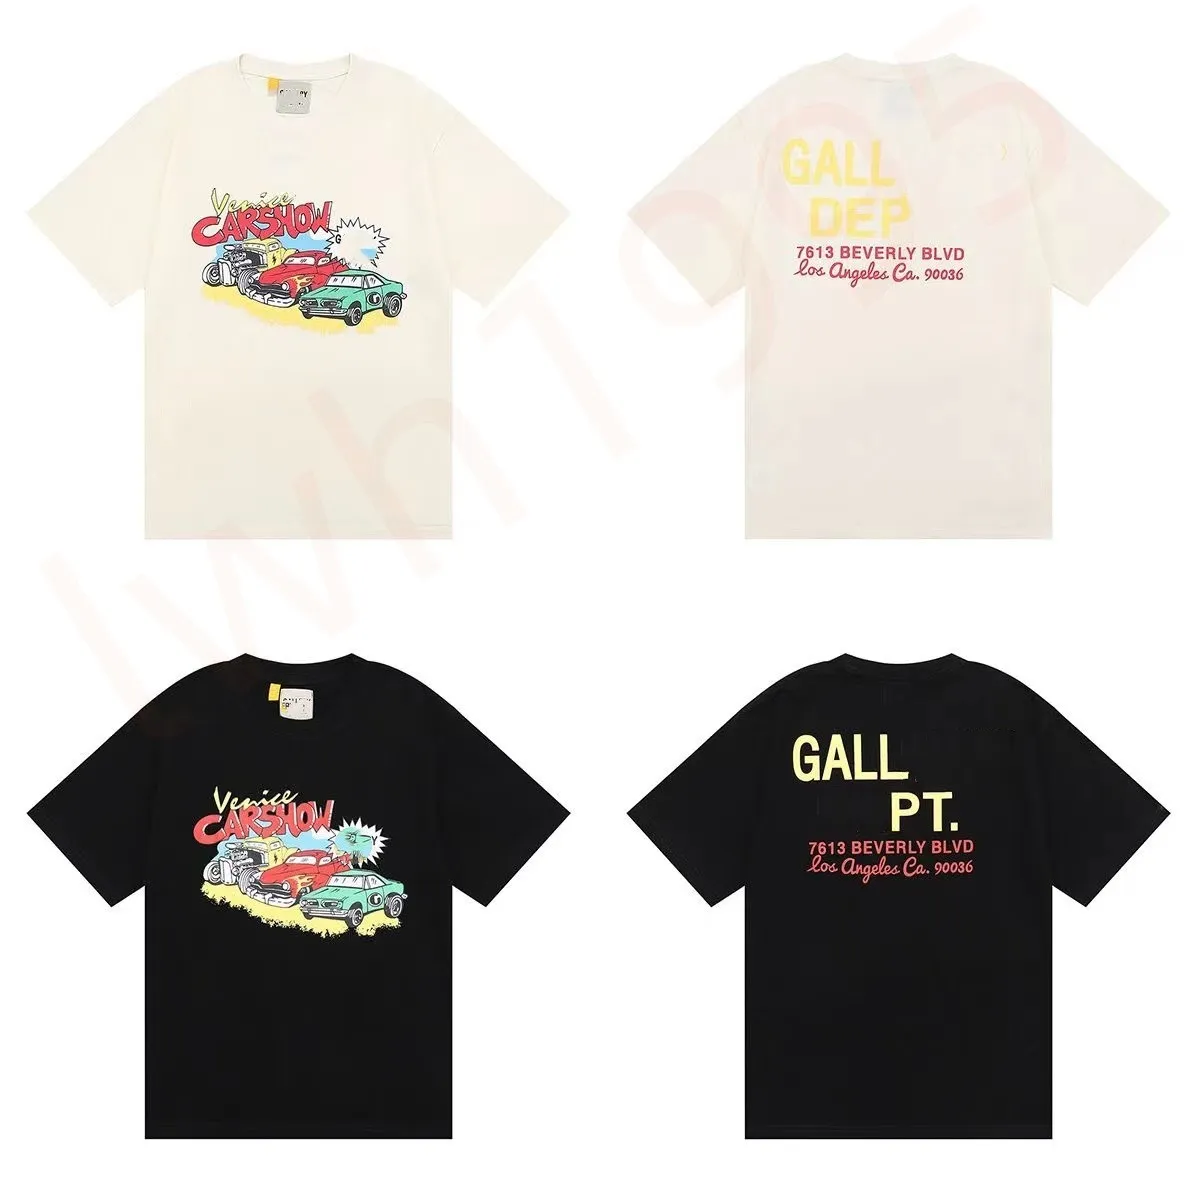 Vêtements Tshirt Galleryes Depts Car Show T-shirt ample à manches imprimées Casual Vintage Hip Hop T-shirts